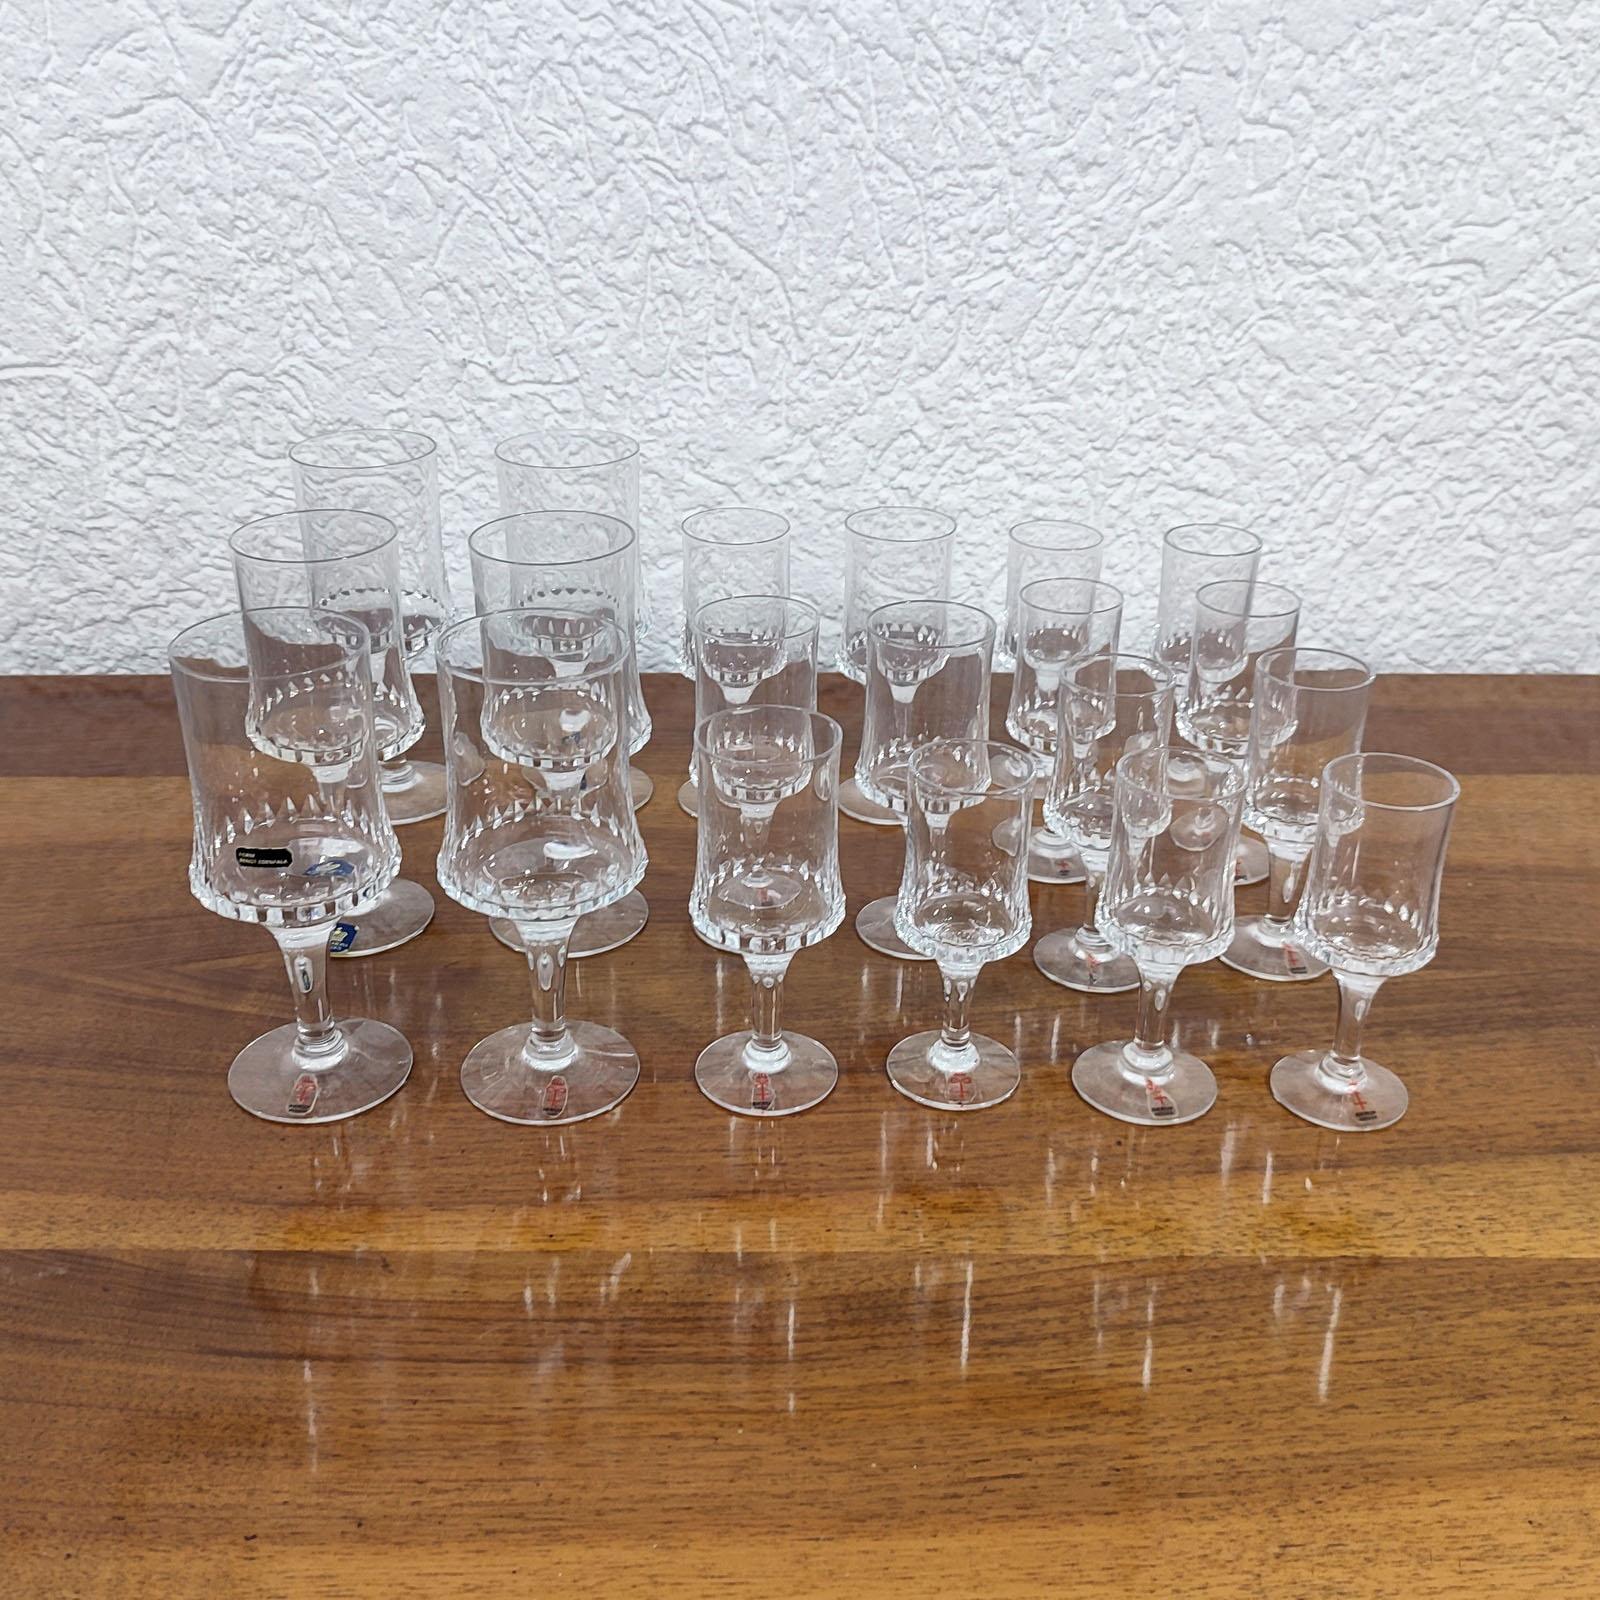 Bengt Edenfalk für Skruf und Royal Krona, 20 Gläser für Wein, Porto und Likör.
Stielgläser, rundum verziert mit Kristallmotiv im Diamantschliff, diese Gläser sind recht selten ein extrem seltener Fund.
Die meisten von ihnen tragen noch die